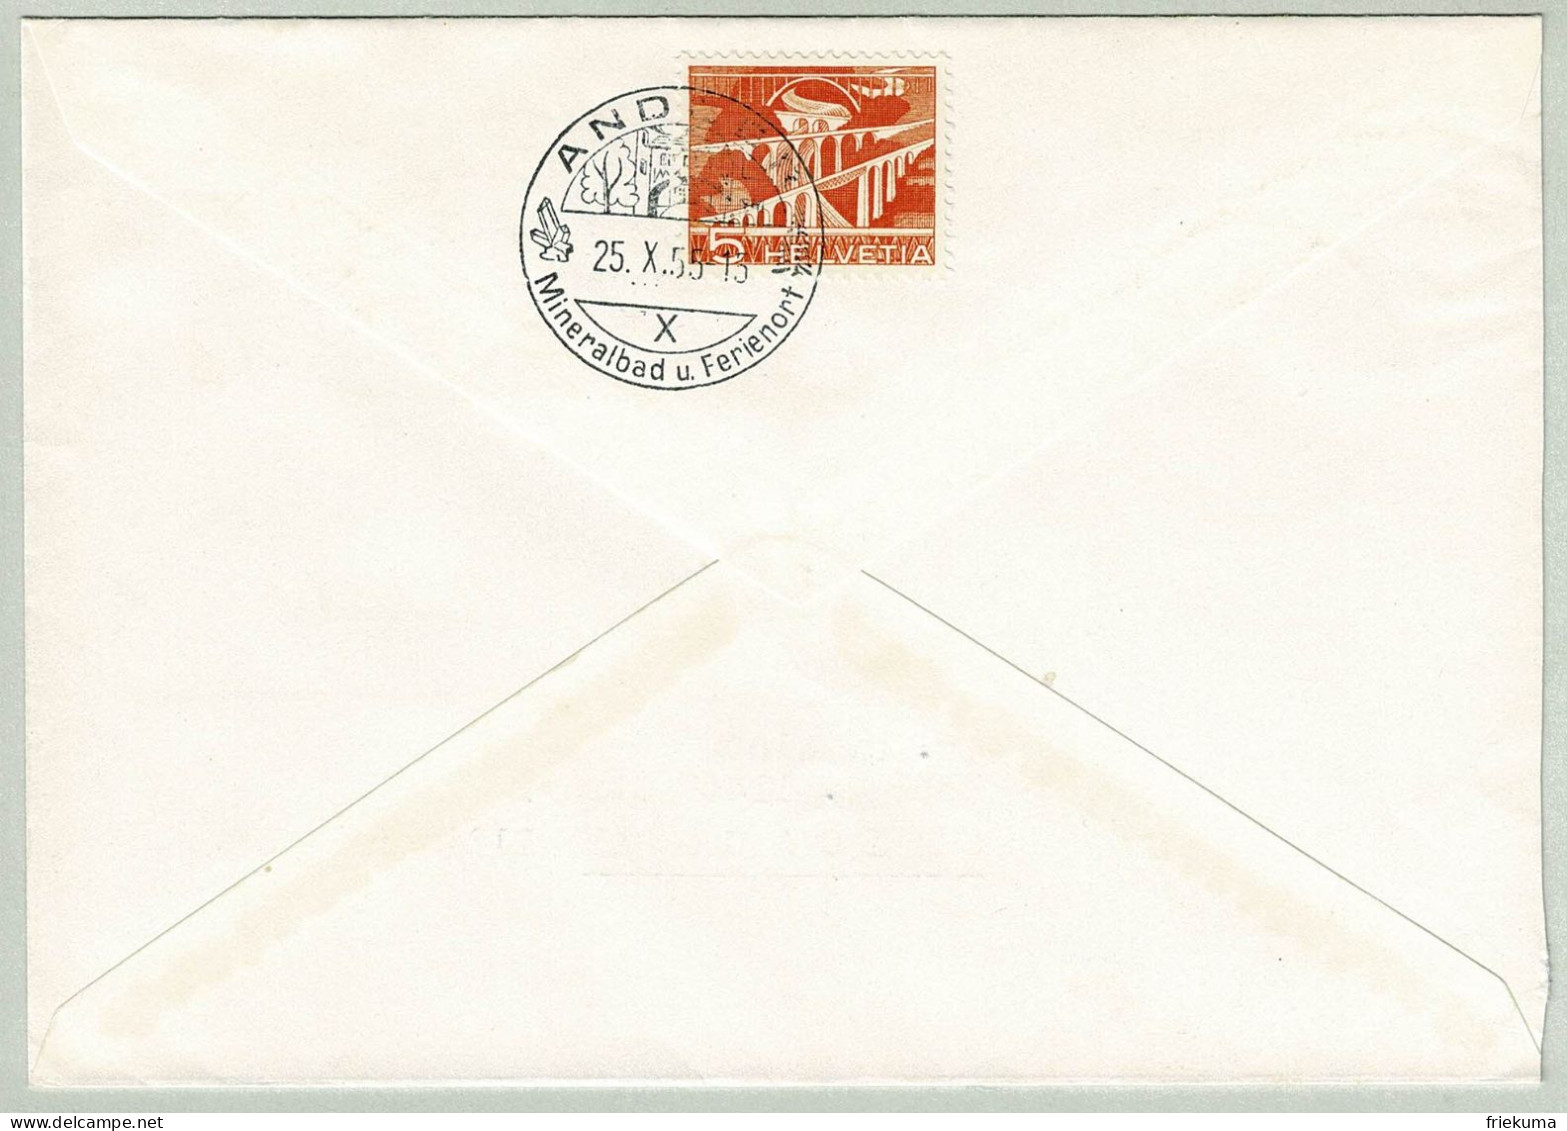 Schweiz / Helvetia 1955, Brief Andeer - Chicago, Mineralbad, Technik Und Landschaft, Teilfrankatur Rückseite - Hydrotherapy